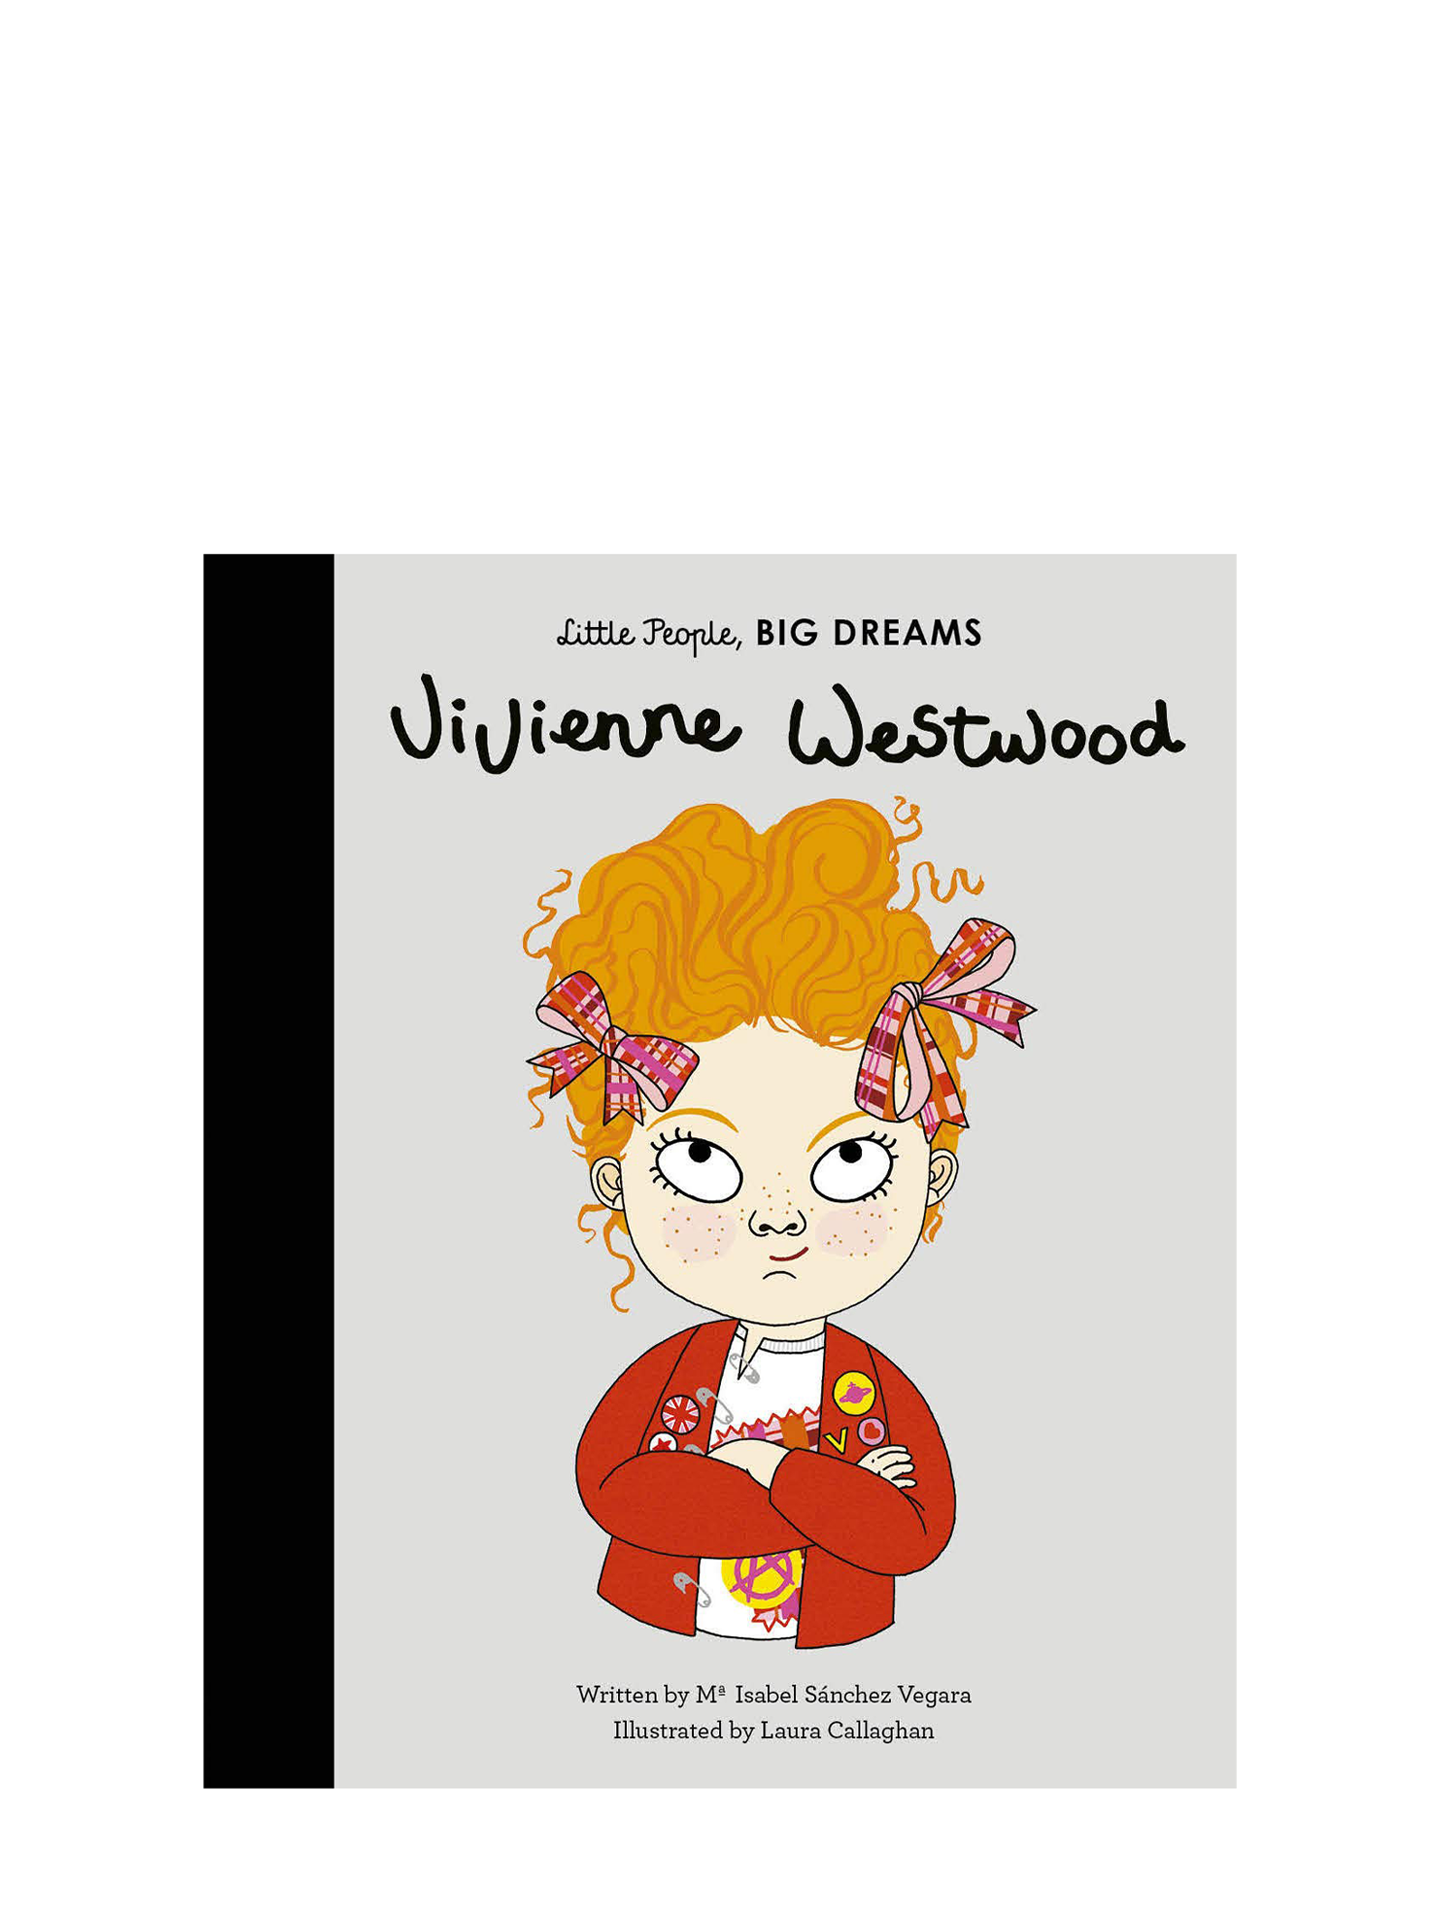 Little People, Big Dreams: Vivienne Westwood